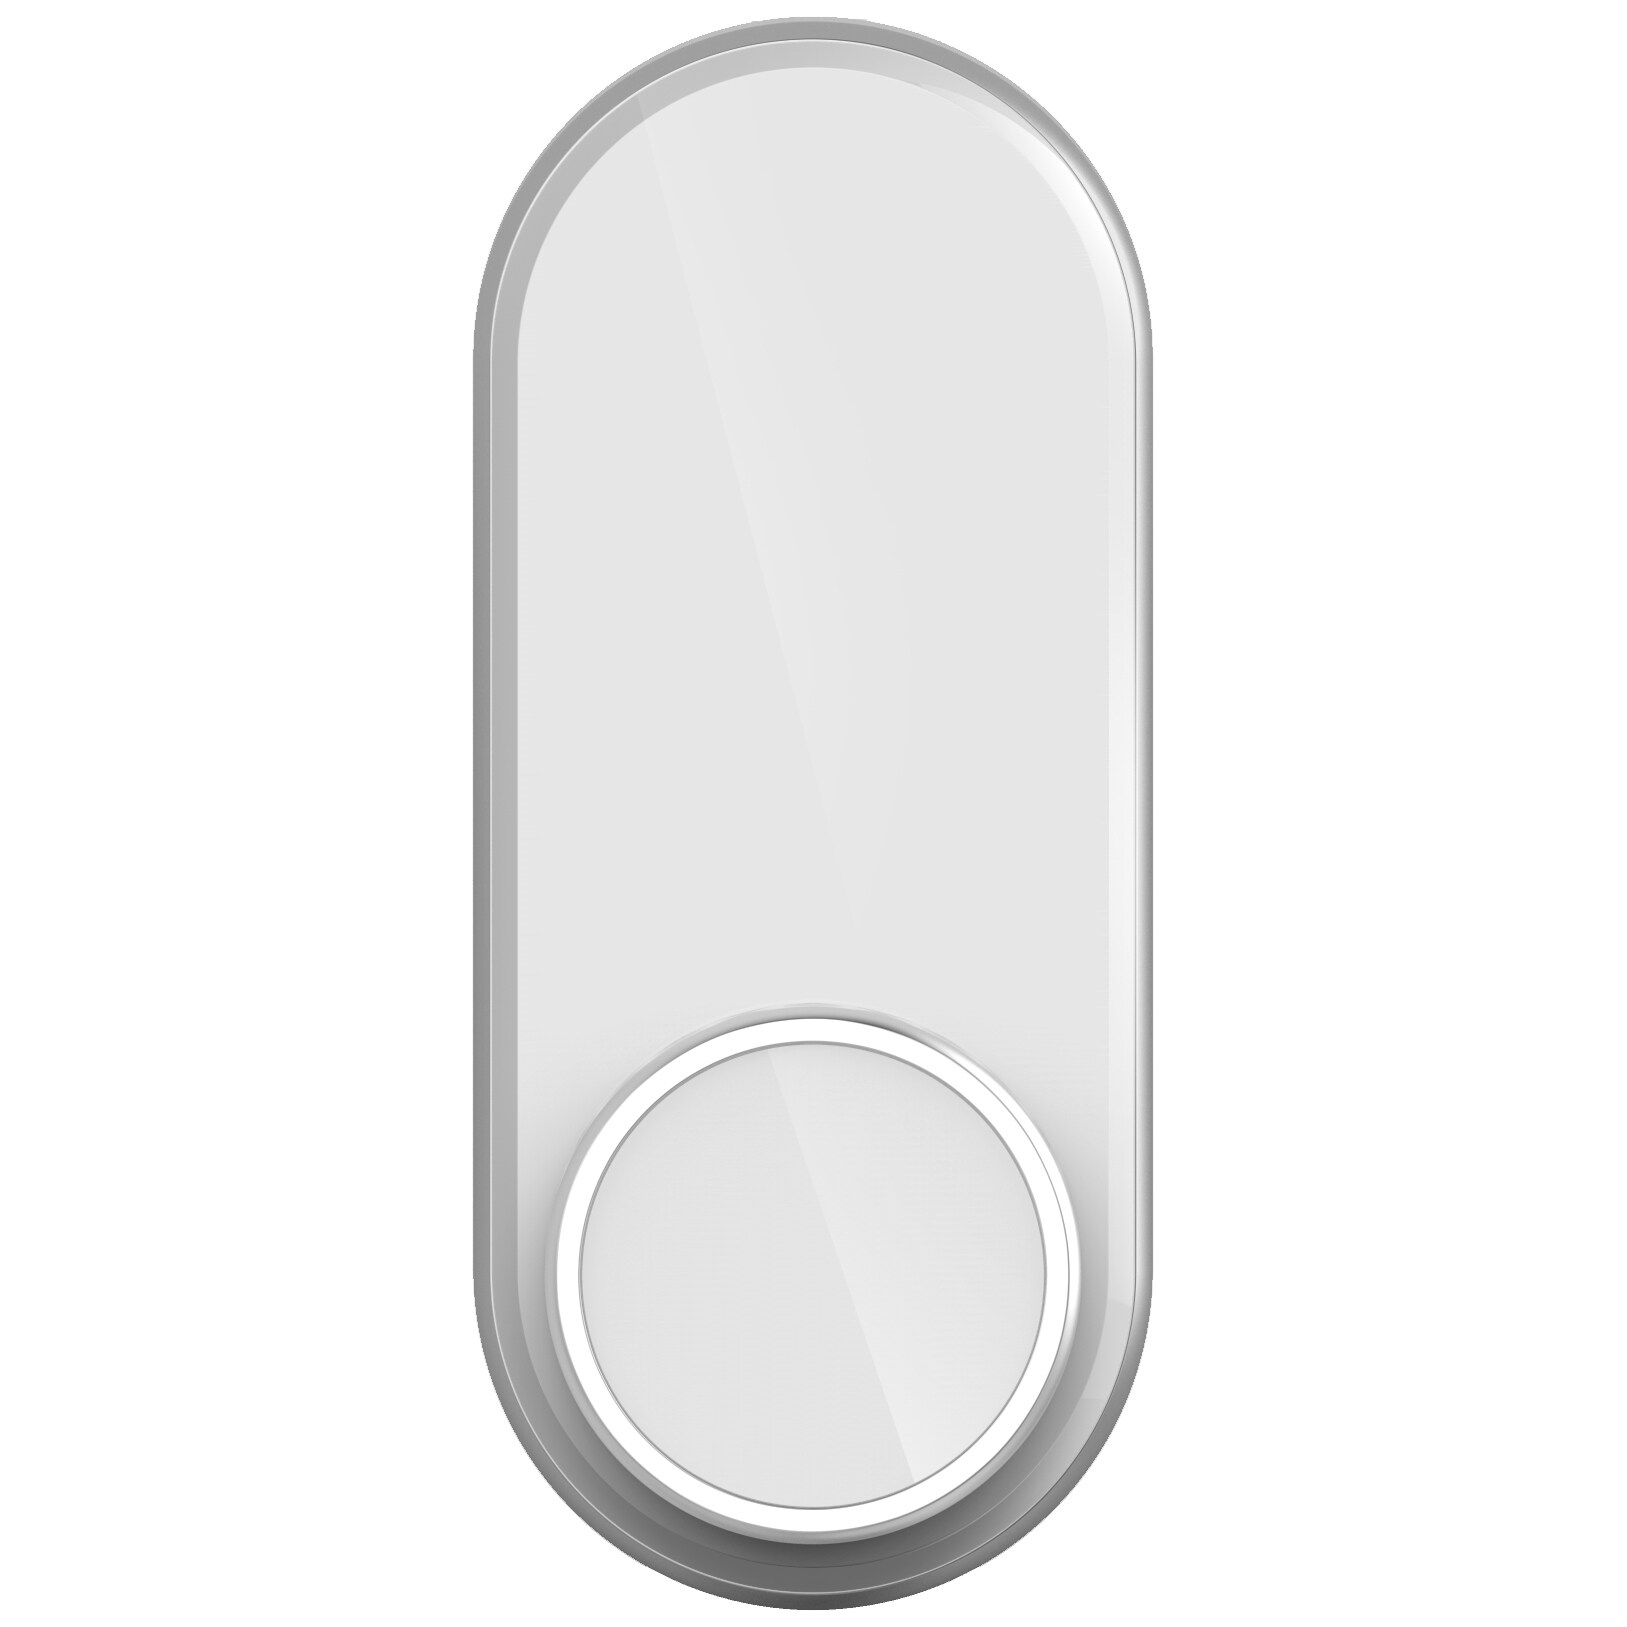 Glue Home smart trådlöst dörrlås (vit) - Elektroniskt dörrlås ...